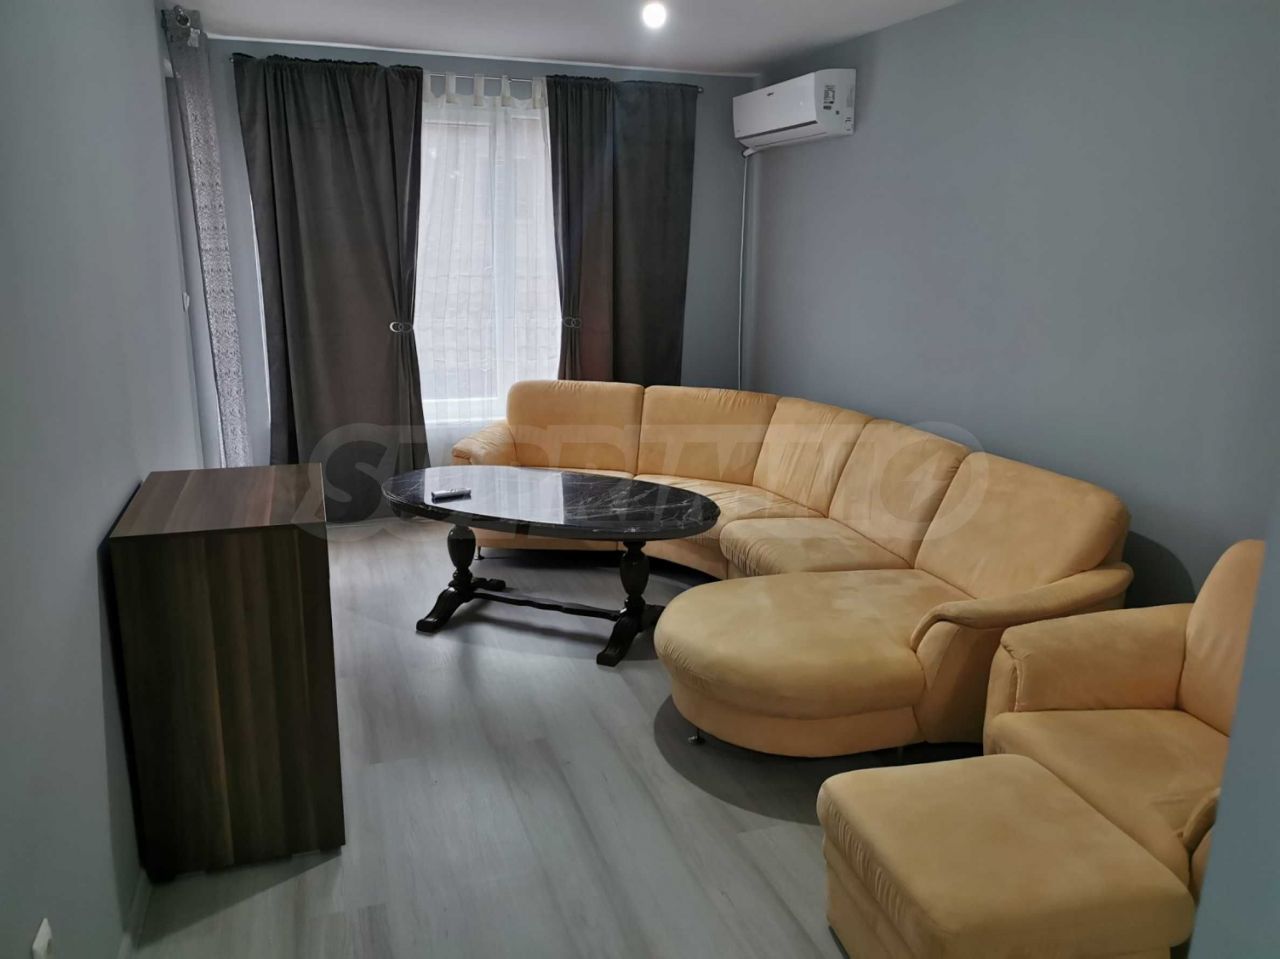 Apartment in Vidin, Bulgaria, 48.71 sq.m - picture 1